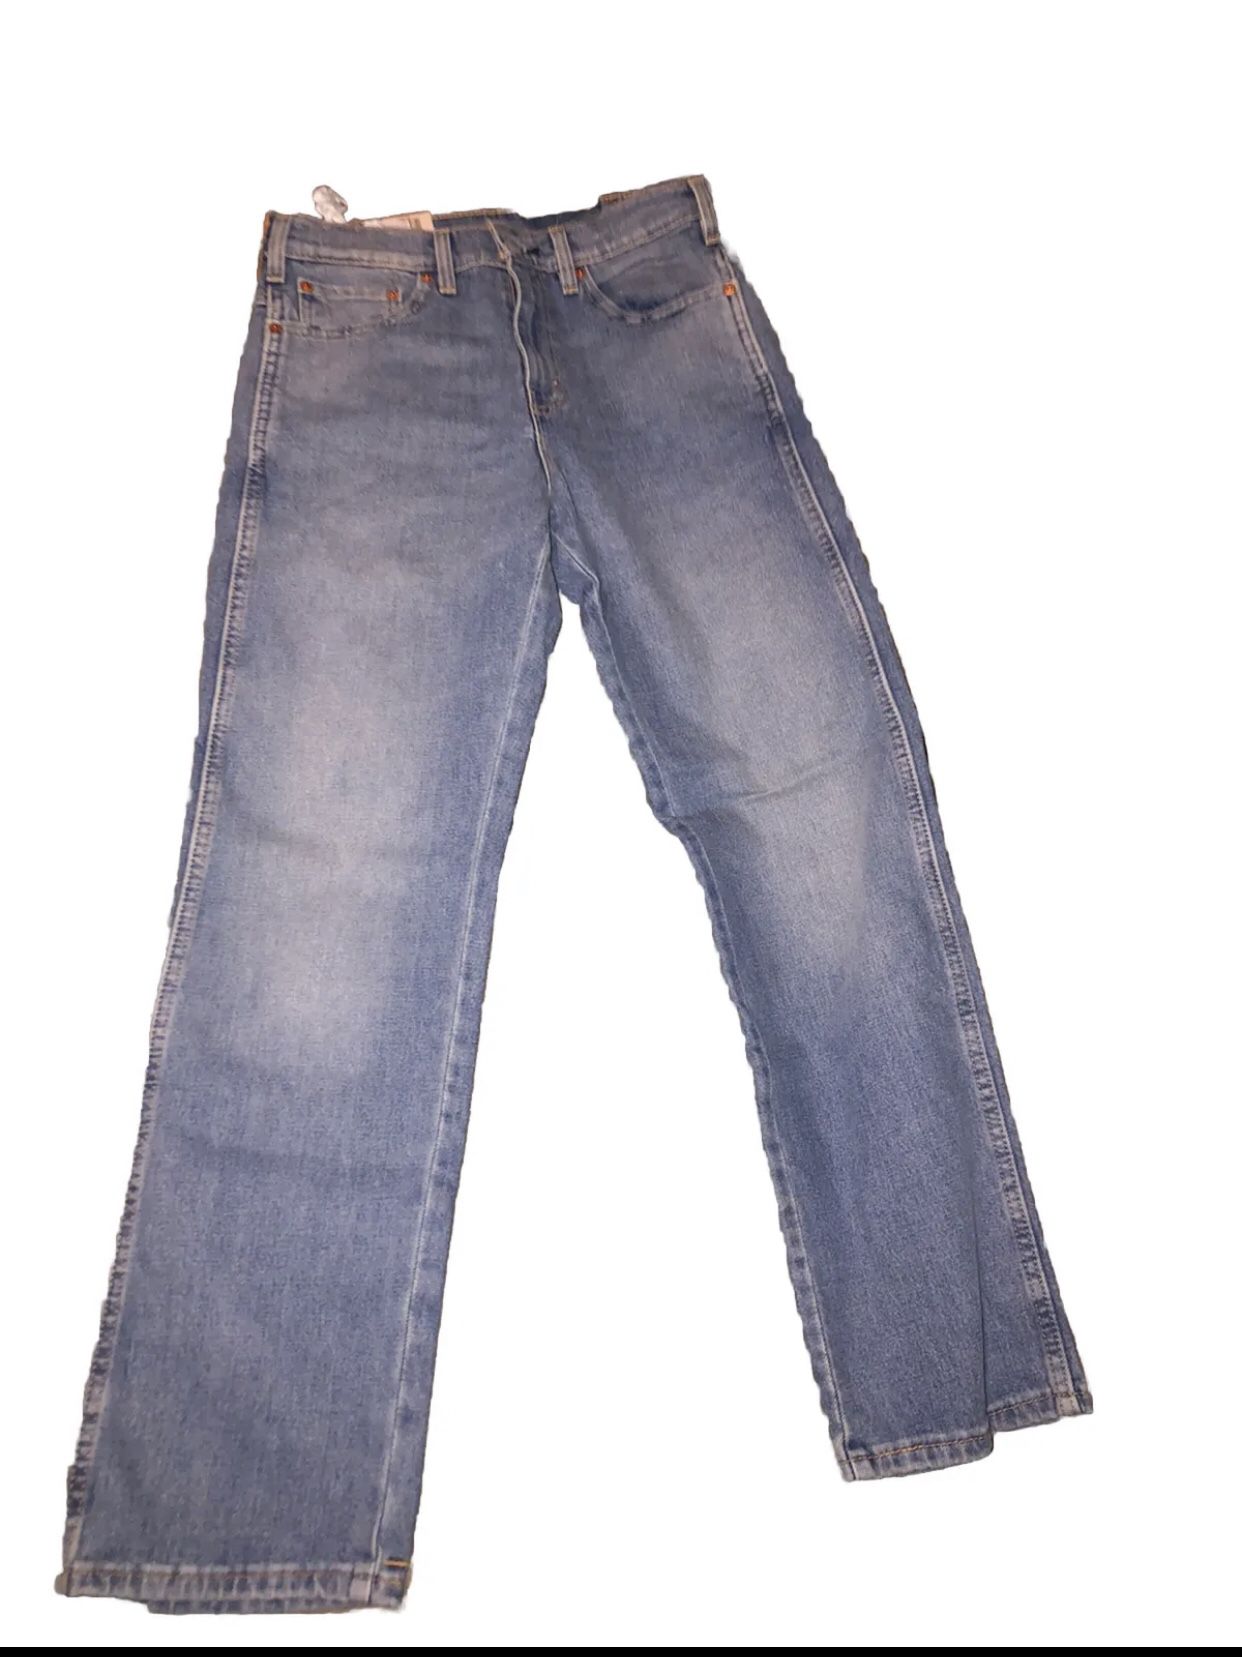 Men’s Levi Blue Jeans 30x30 (NWT)